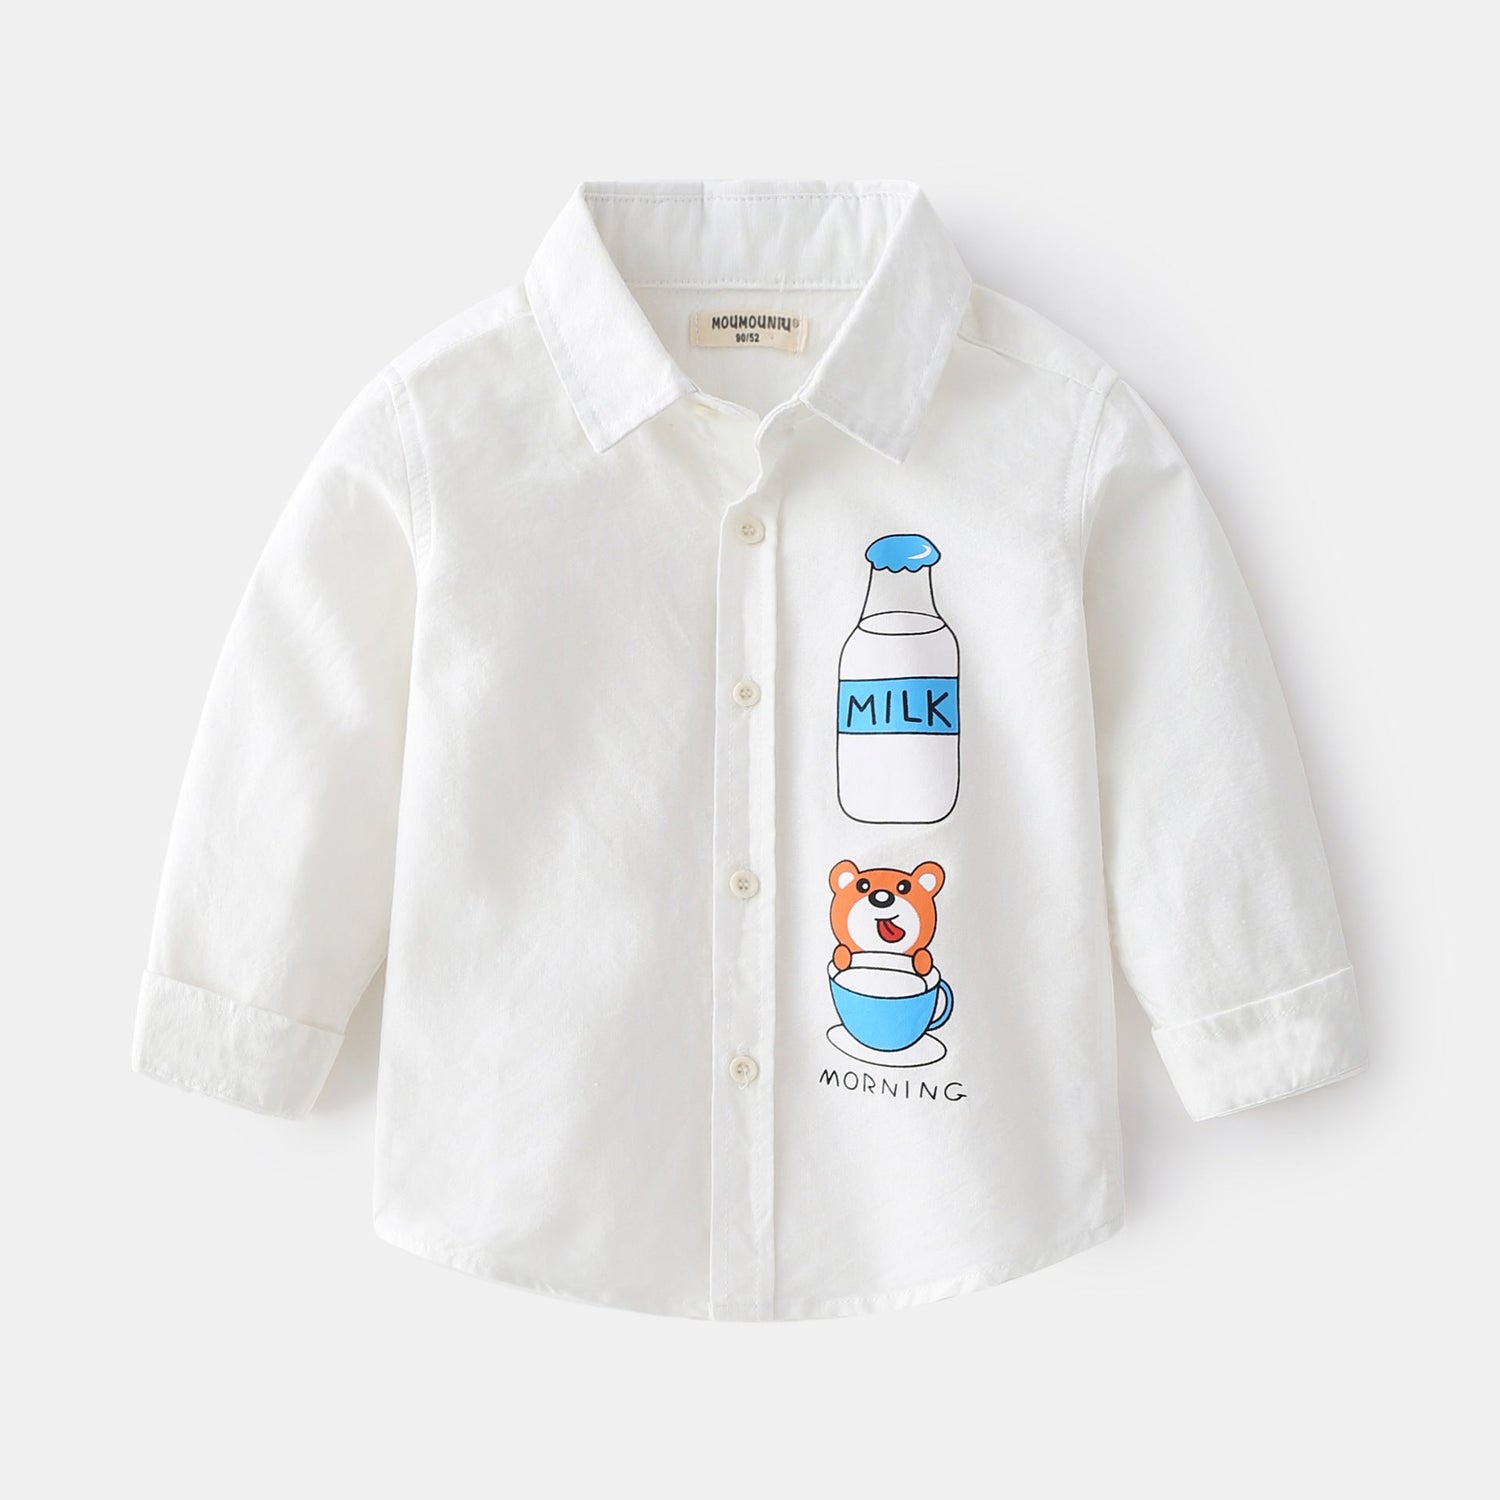 [513426] - Baju Atasan Import Kemeja Anak - Motif Milk Bear